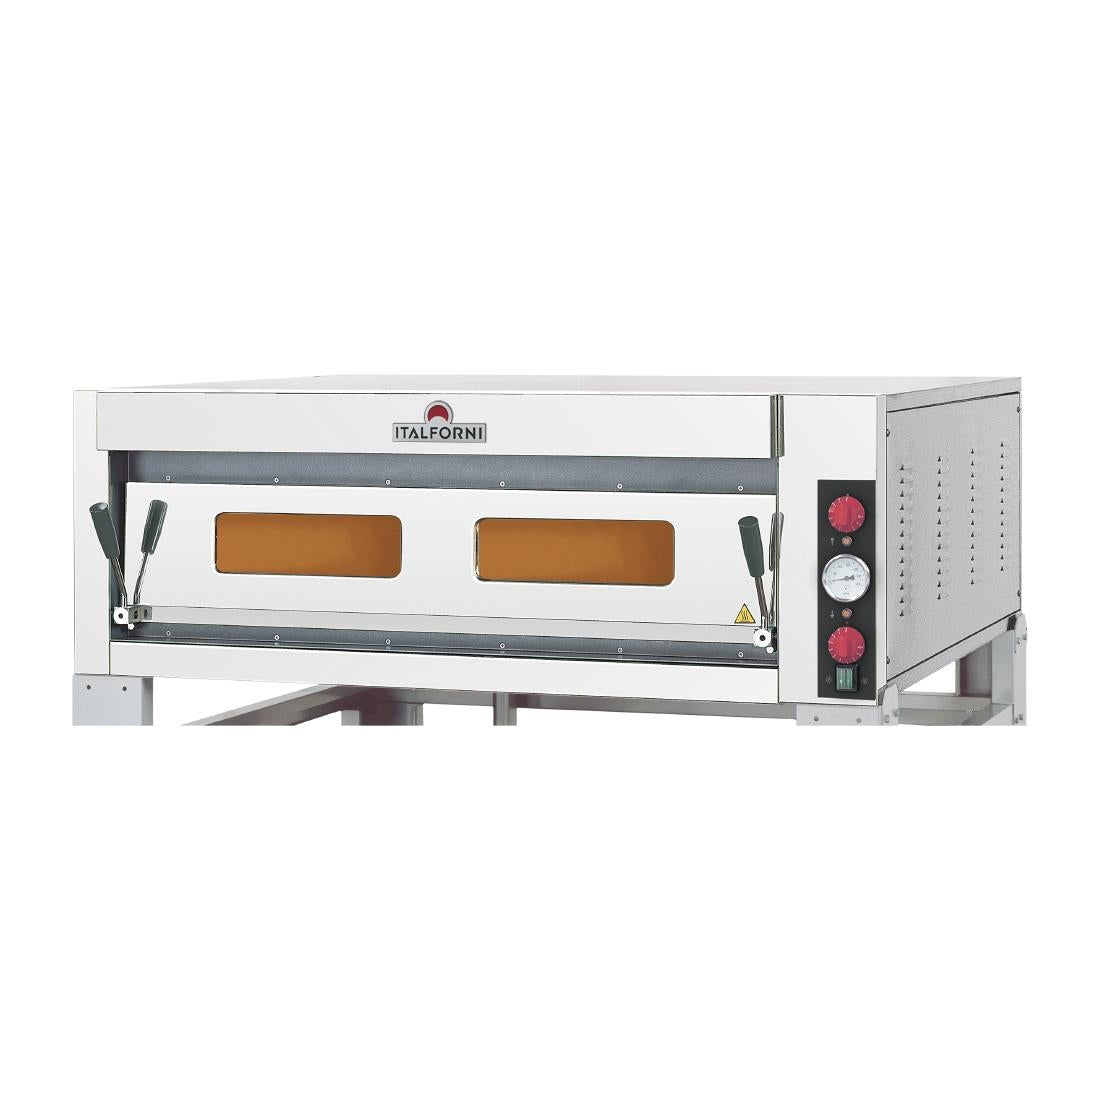 HP646 Italforni TKD1 Single Deck Electric Pizza Oven 6 x 13" Pizzas